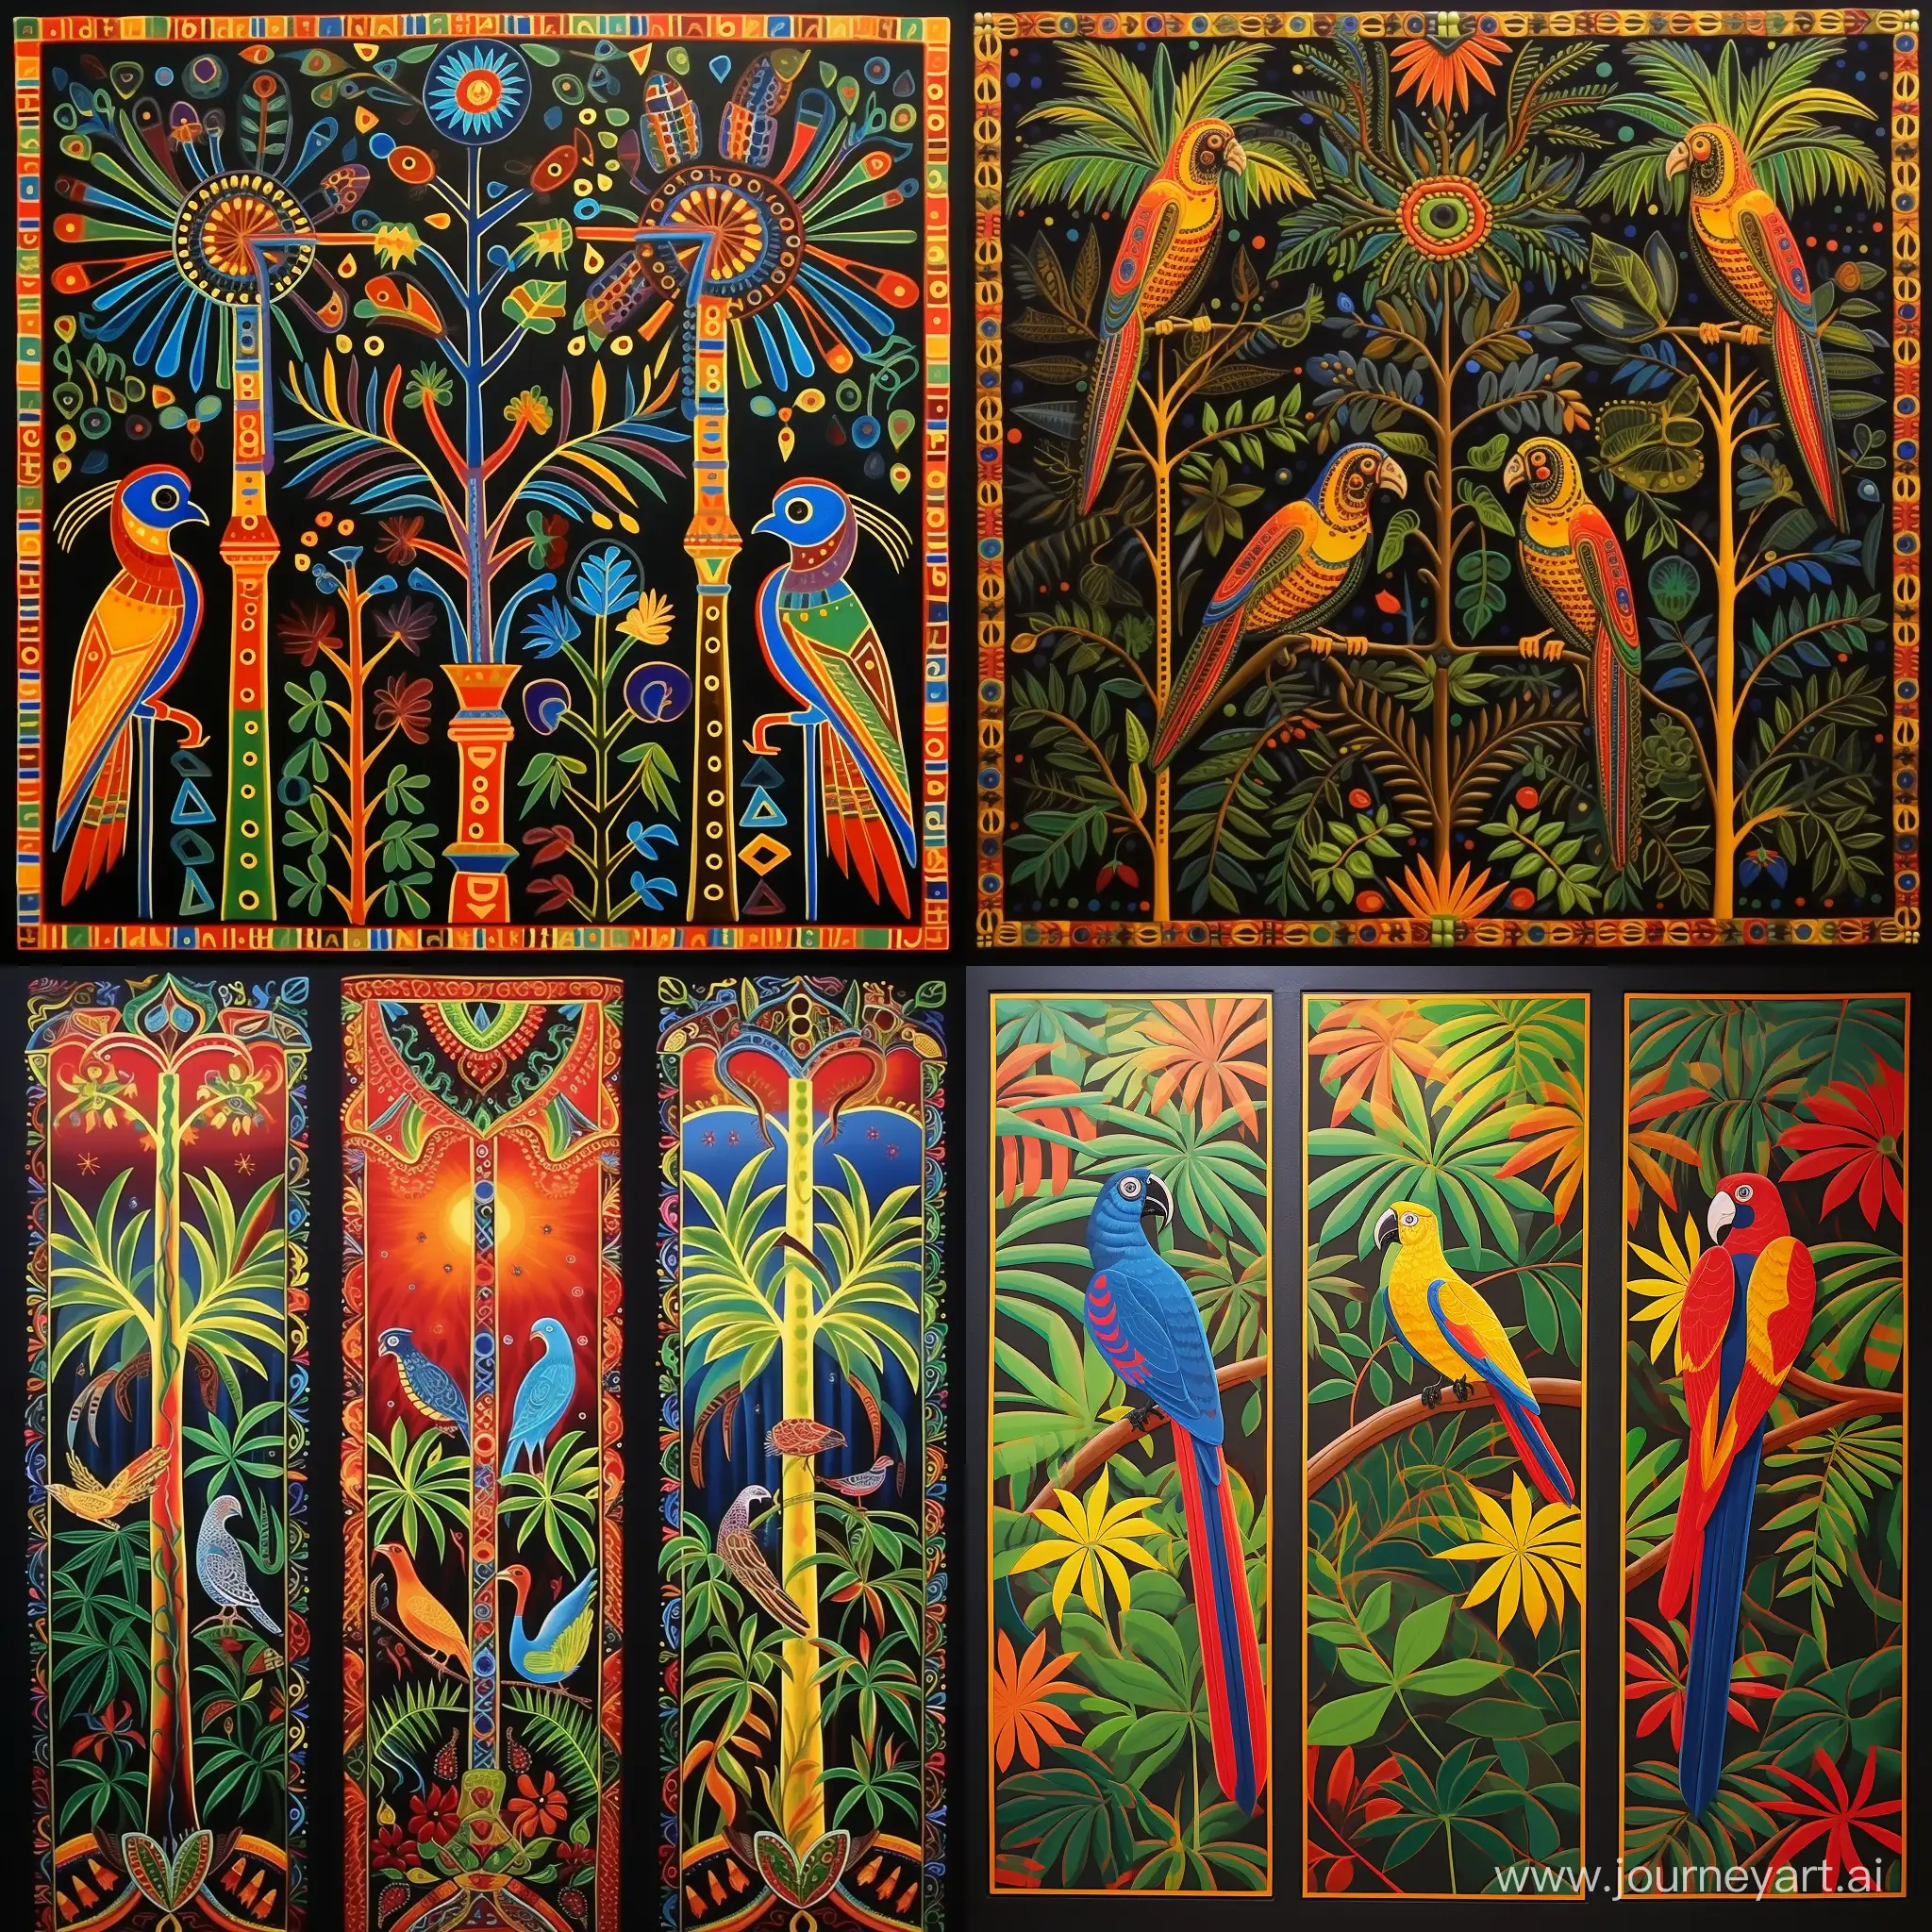 арт полотно  этническое...  три дорожки....   верхняя -  чередование пальм ,  Средняя  попугаи  друг за другом  7 попугаев ... нижняя  узоры африканские  